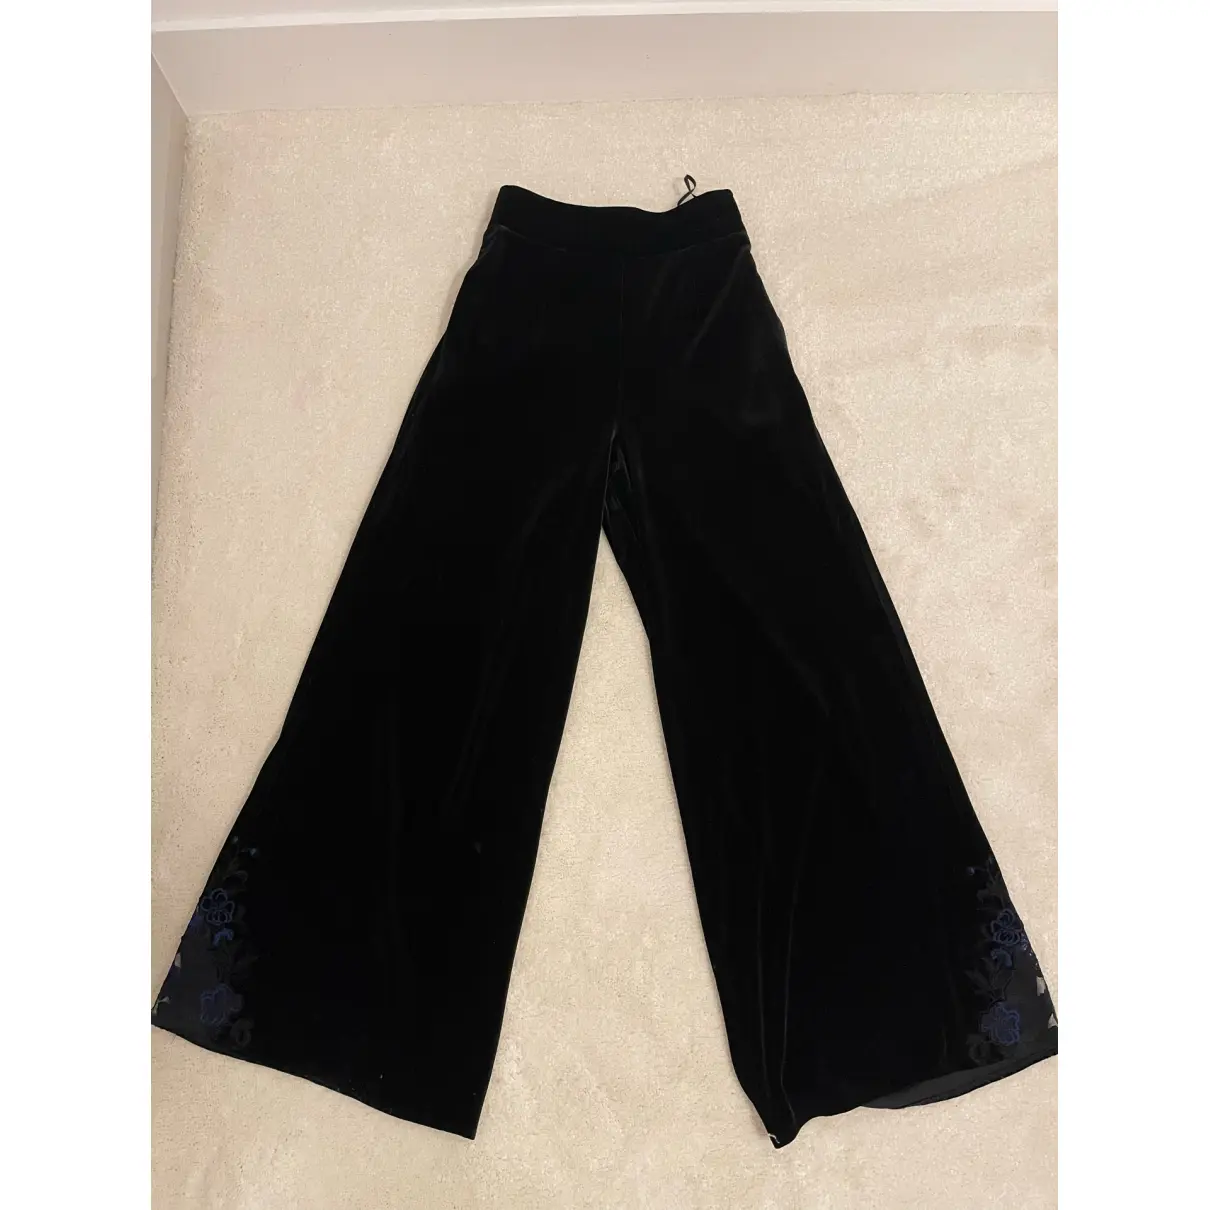 Buy Myla Velvet trousers online